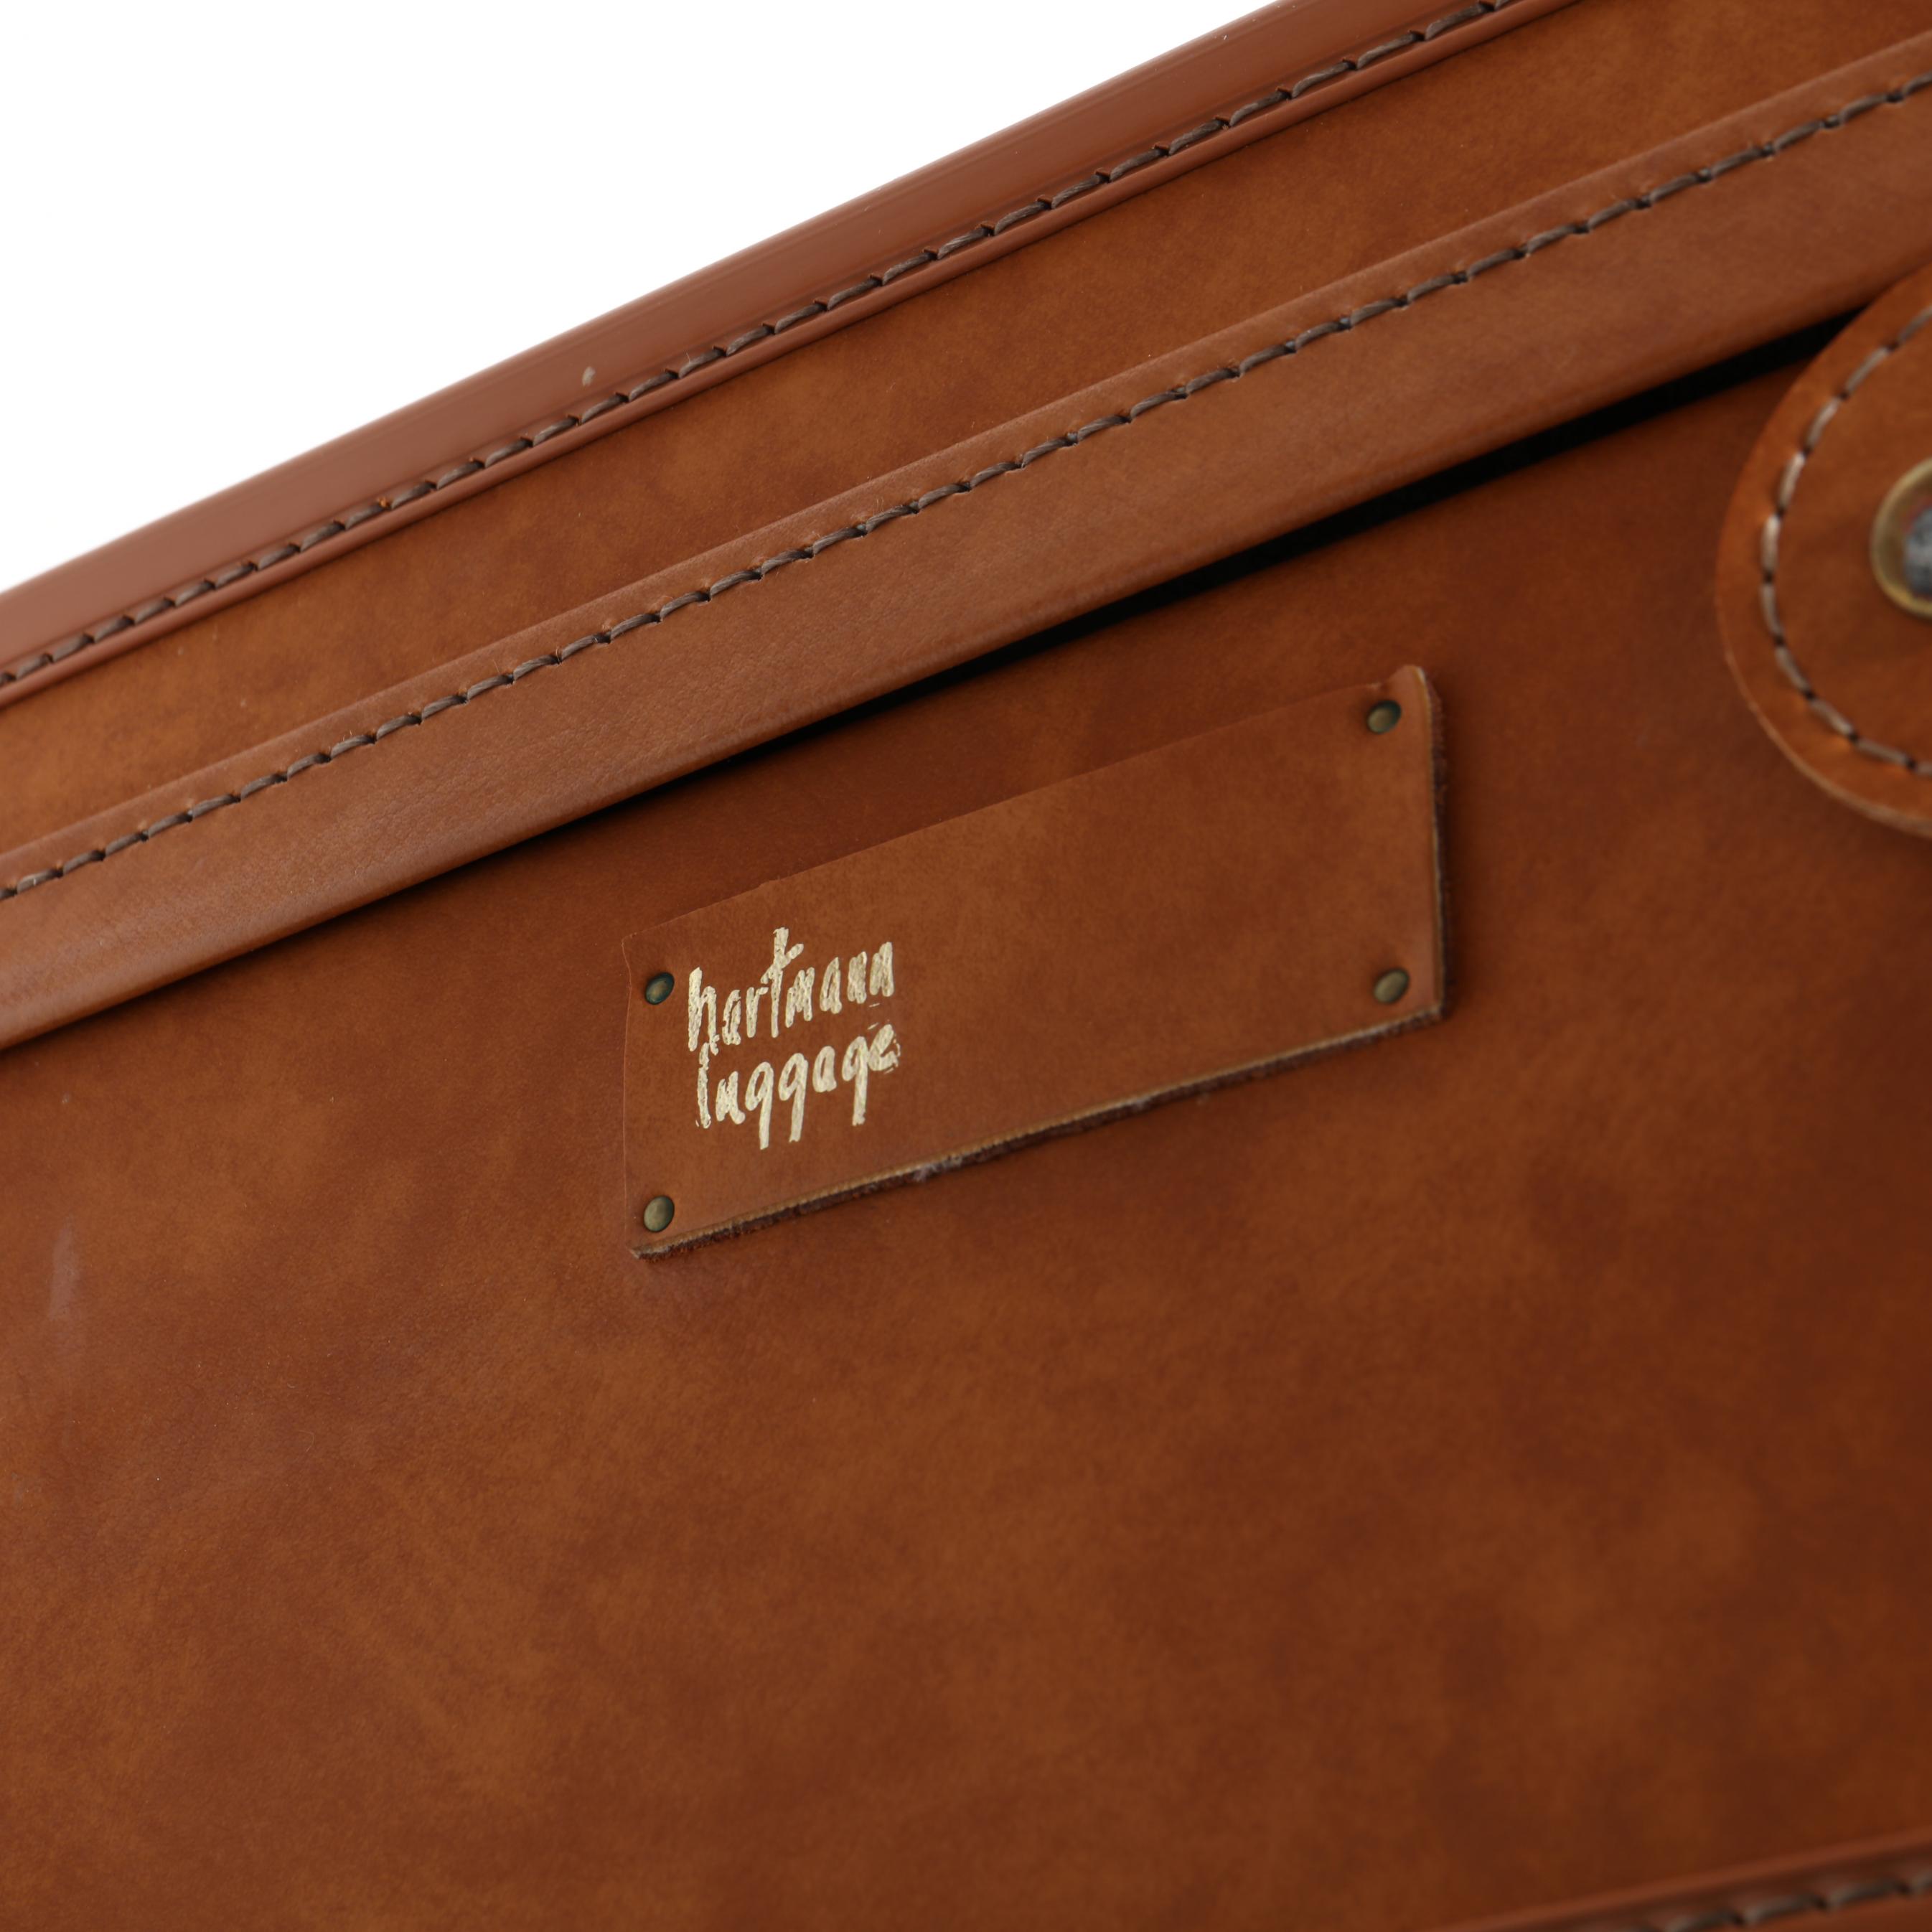 Shop Hartmann Luggage Belting Leather Expanda – Luggage Factory